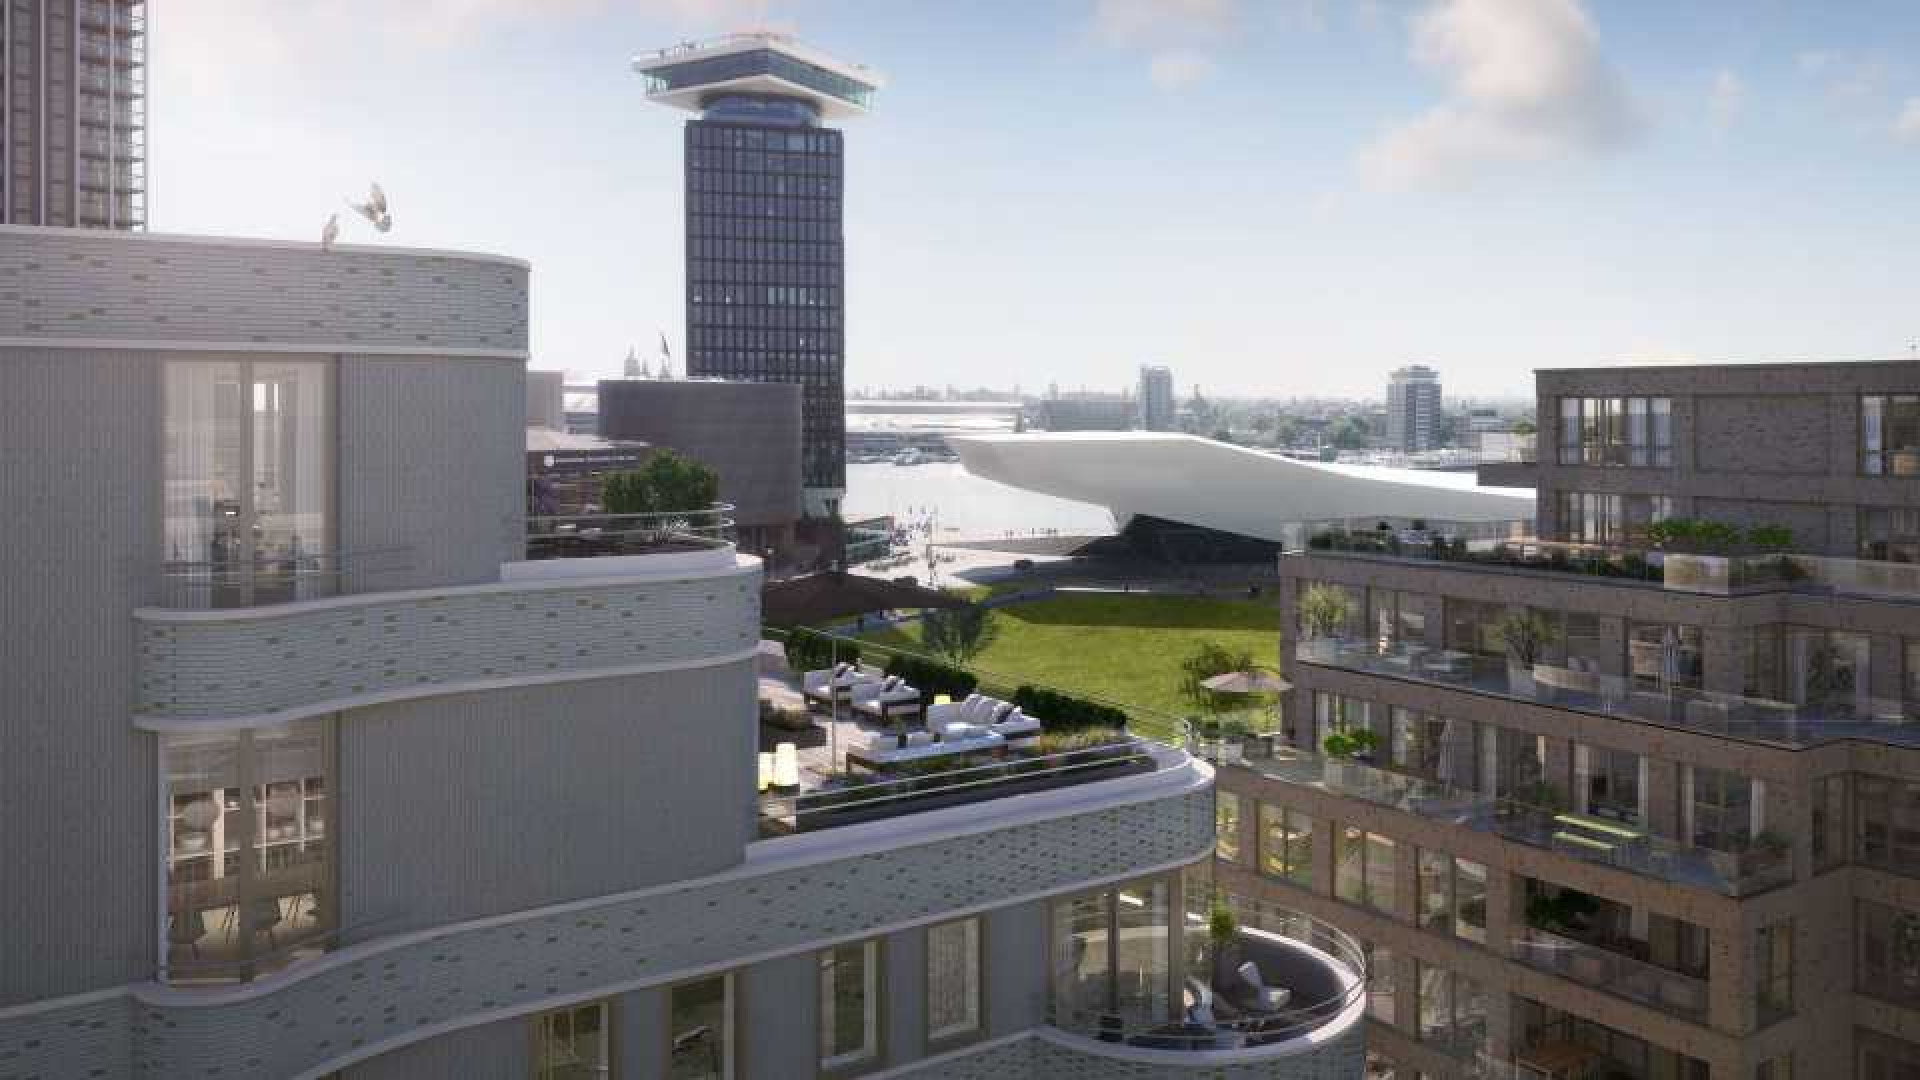 Gordon koopt miljoenen penthouse in Amsterdam. Zie foto's